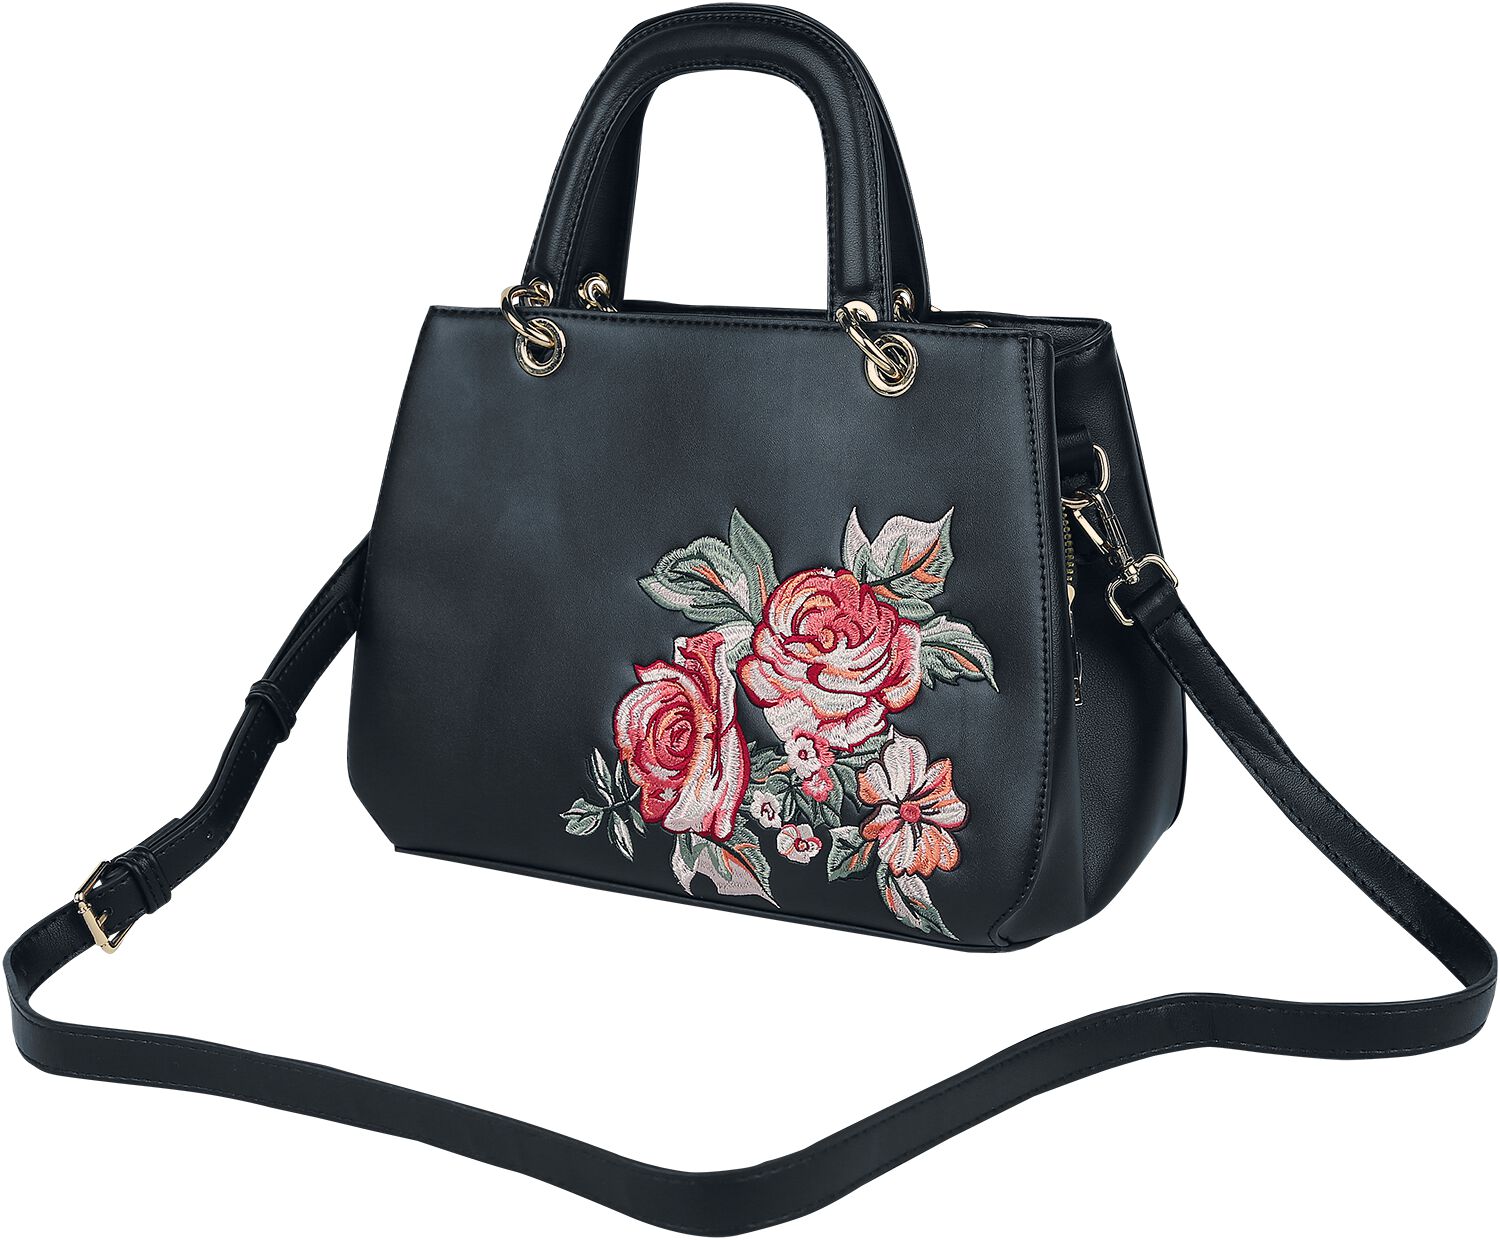 Vintage Floral Embroidered Day Bag Handtasche schwarz von Voodoo Vixen